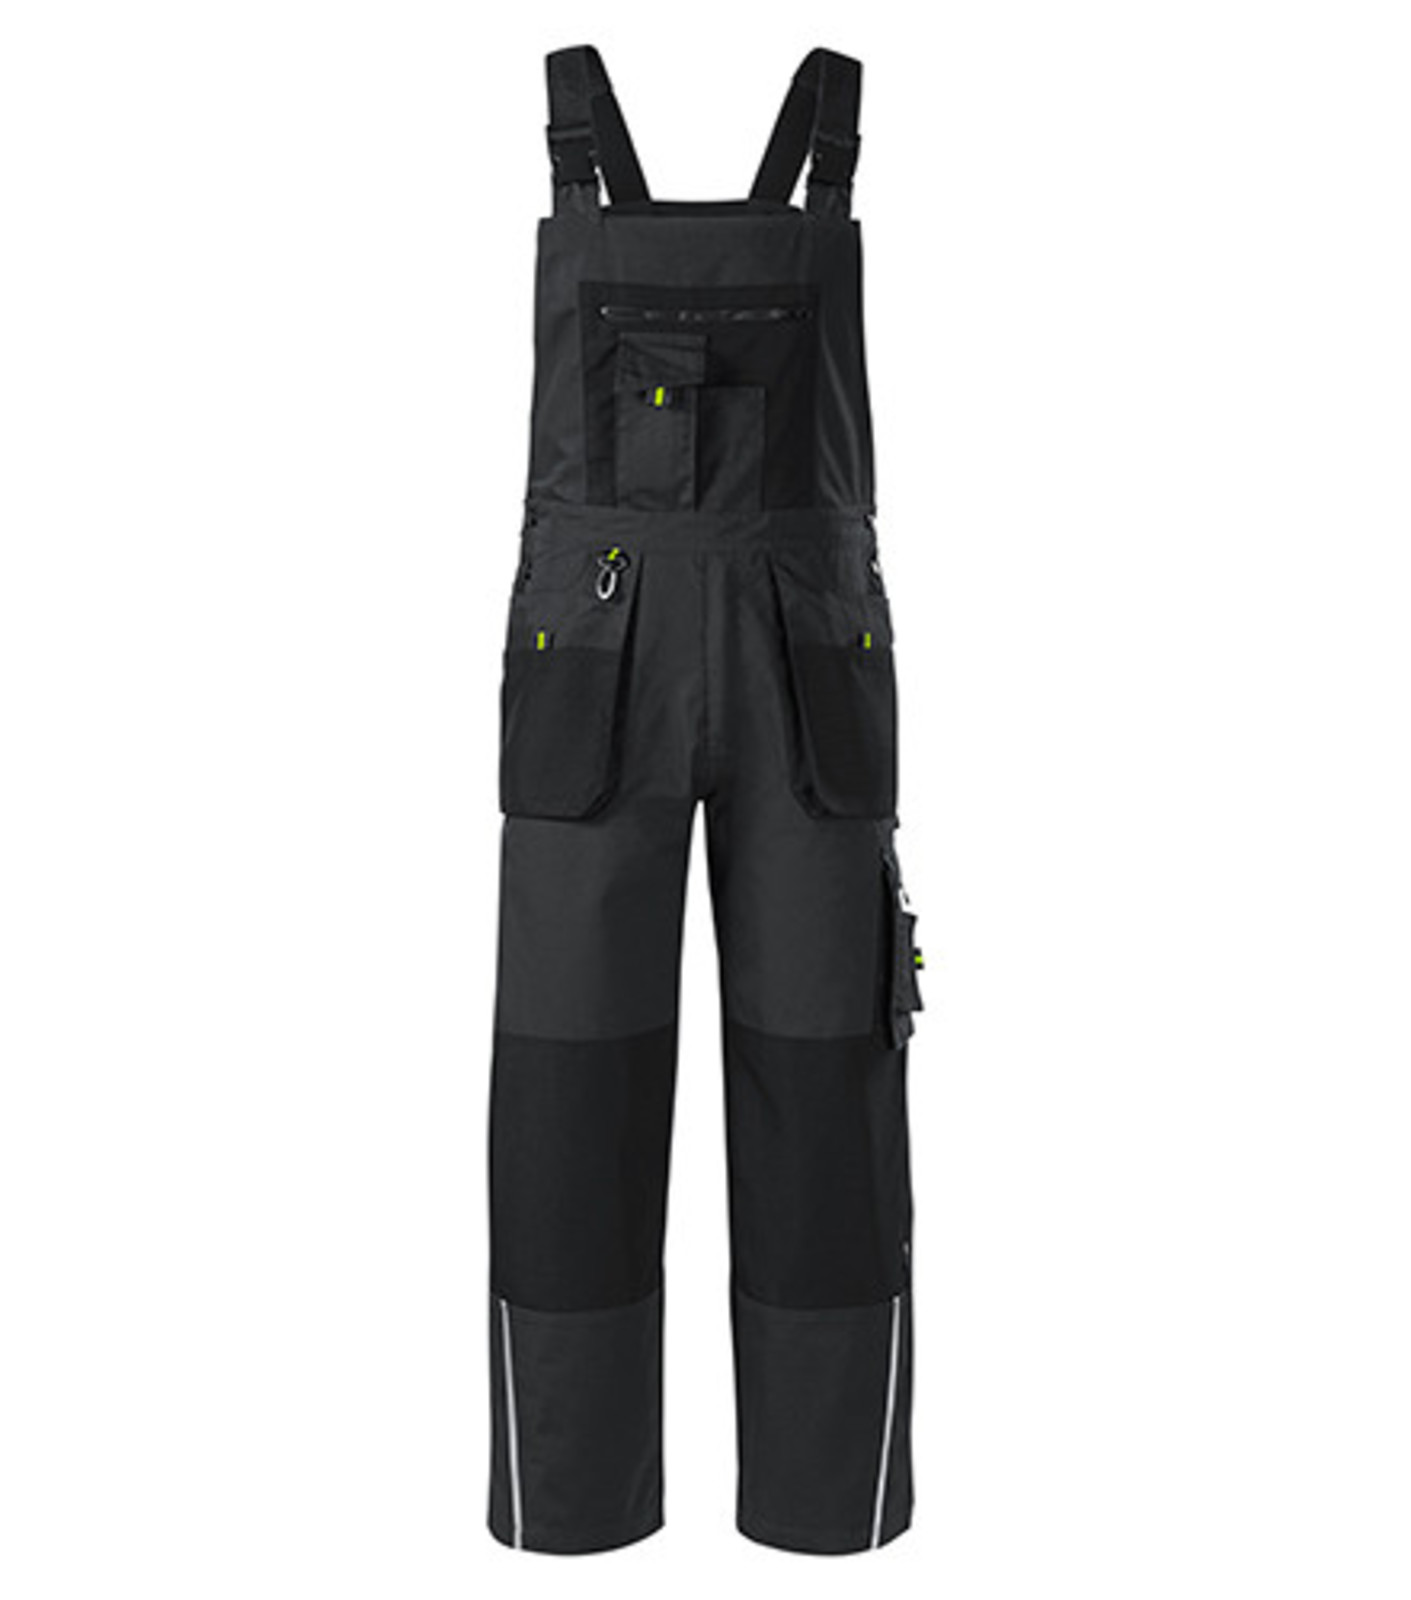 Montérkové nohavice s náprsenkou Adler Ranger W04 - veľkosť: 56-58, farba: šedá ebony